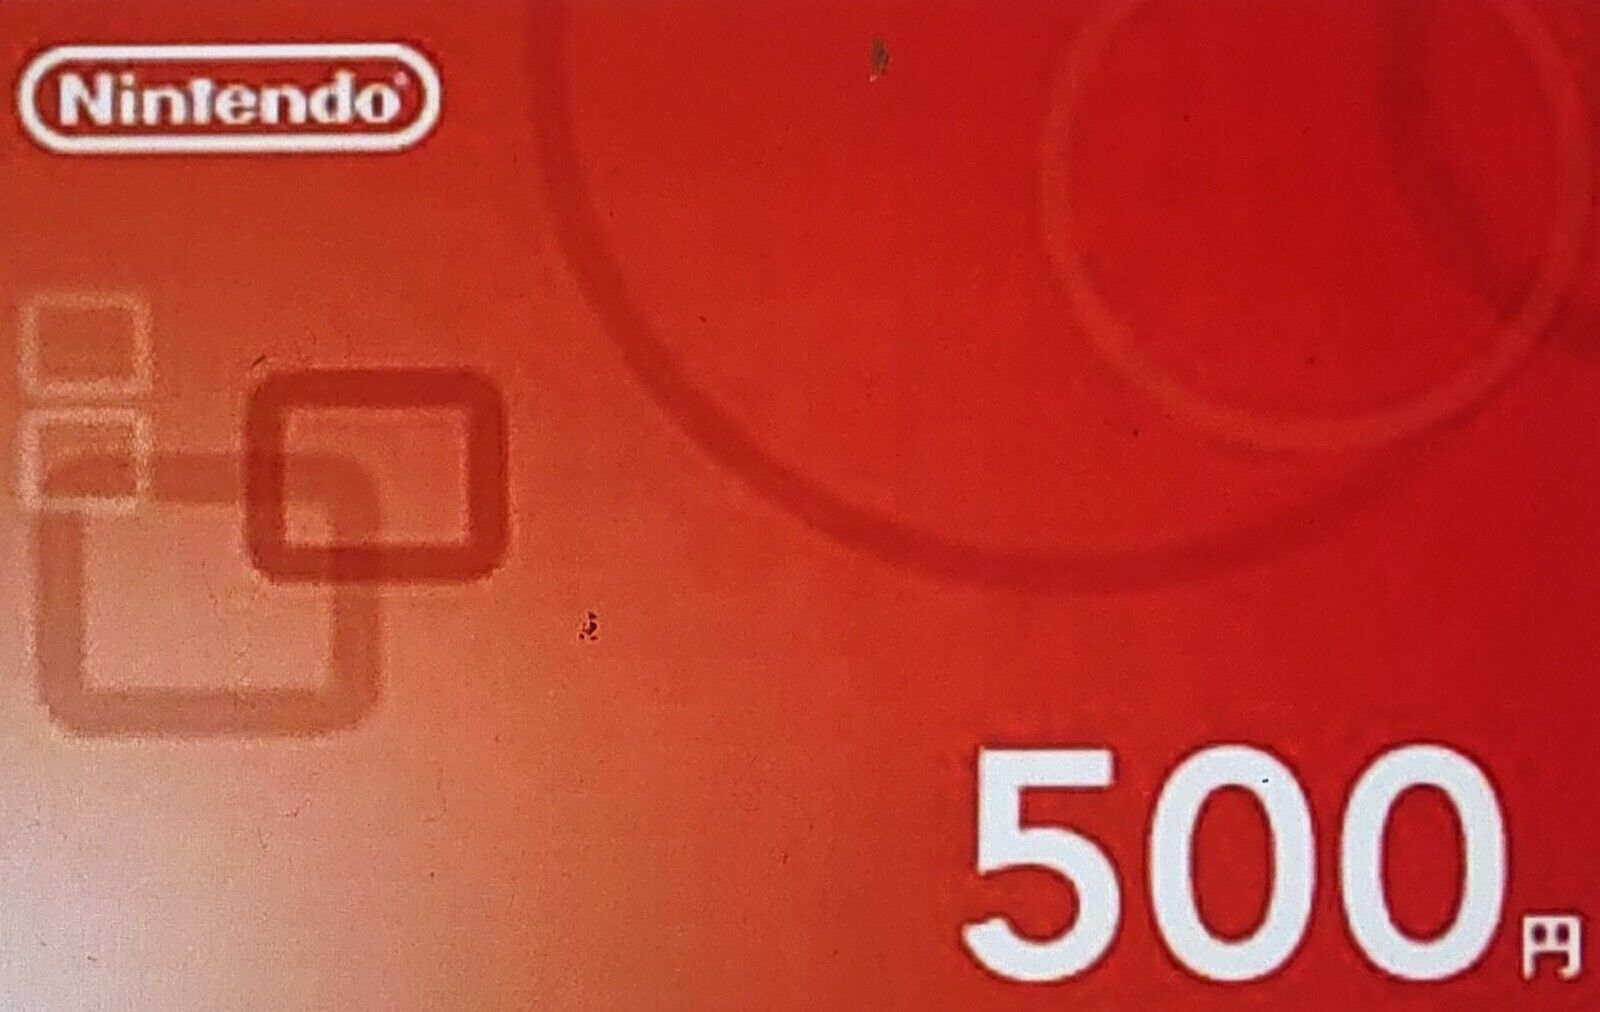 Japan NINTENDO prepaid number ¥500(JPY) Online code version (for Japane eSHOP) Nintendo Digital Card